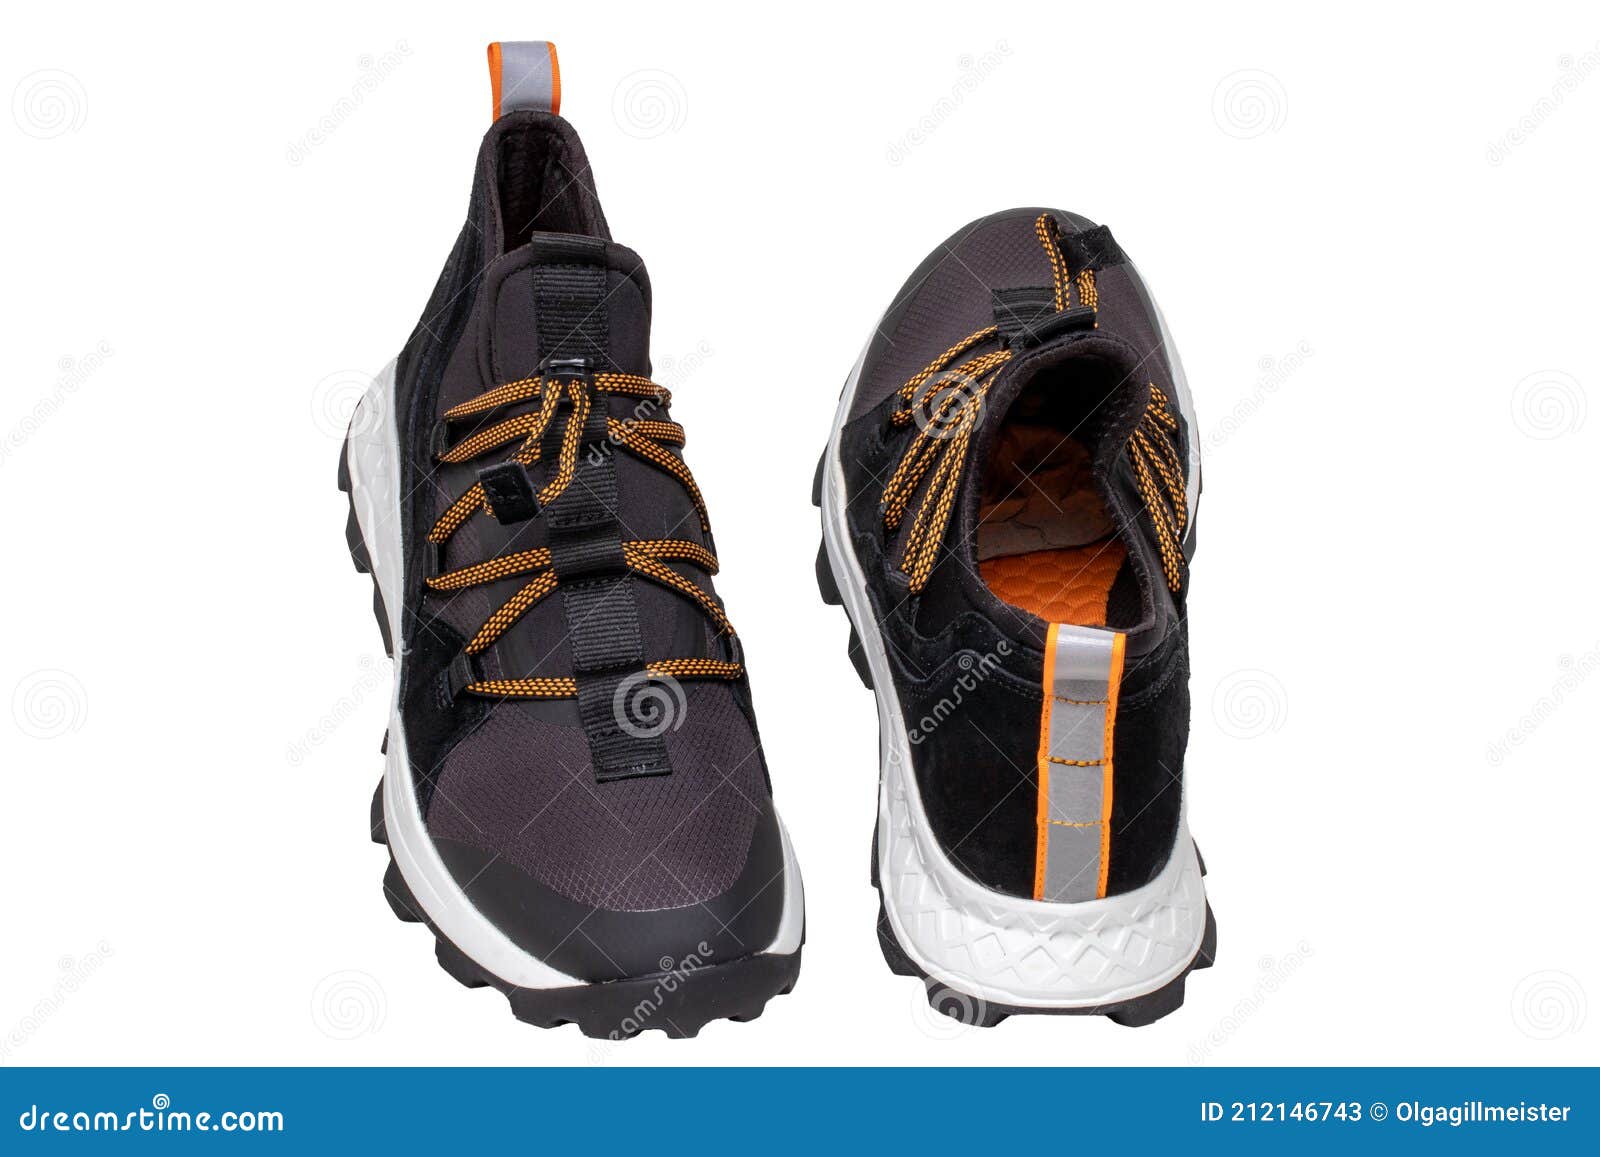 Hombres Zapatos De Moda. Primer Plano De Un Par De Zapatillas Negras O Deportivos Aislados Sobre Un Fondo Blanc Imagen de archivo - Imagen nuevo, 212146743